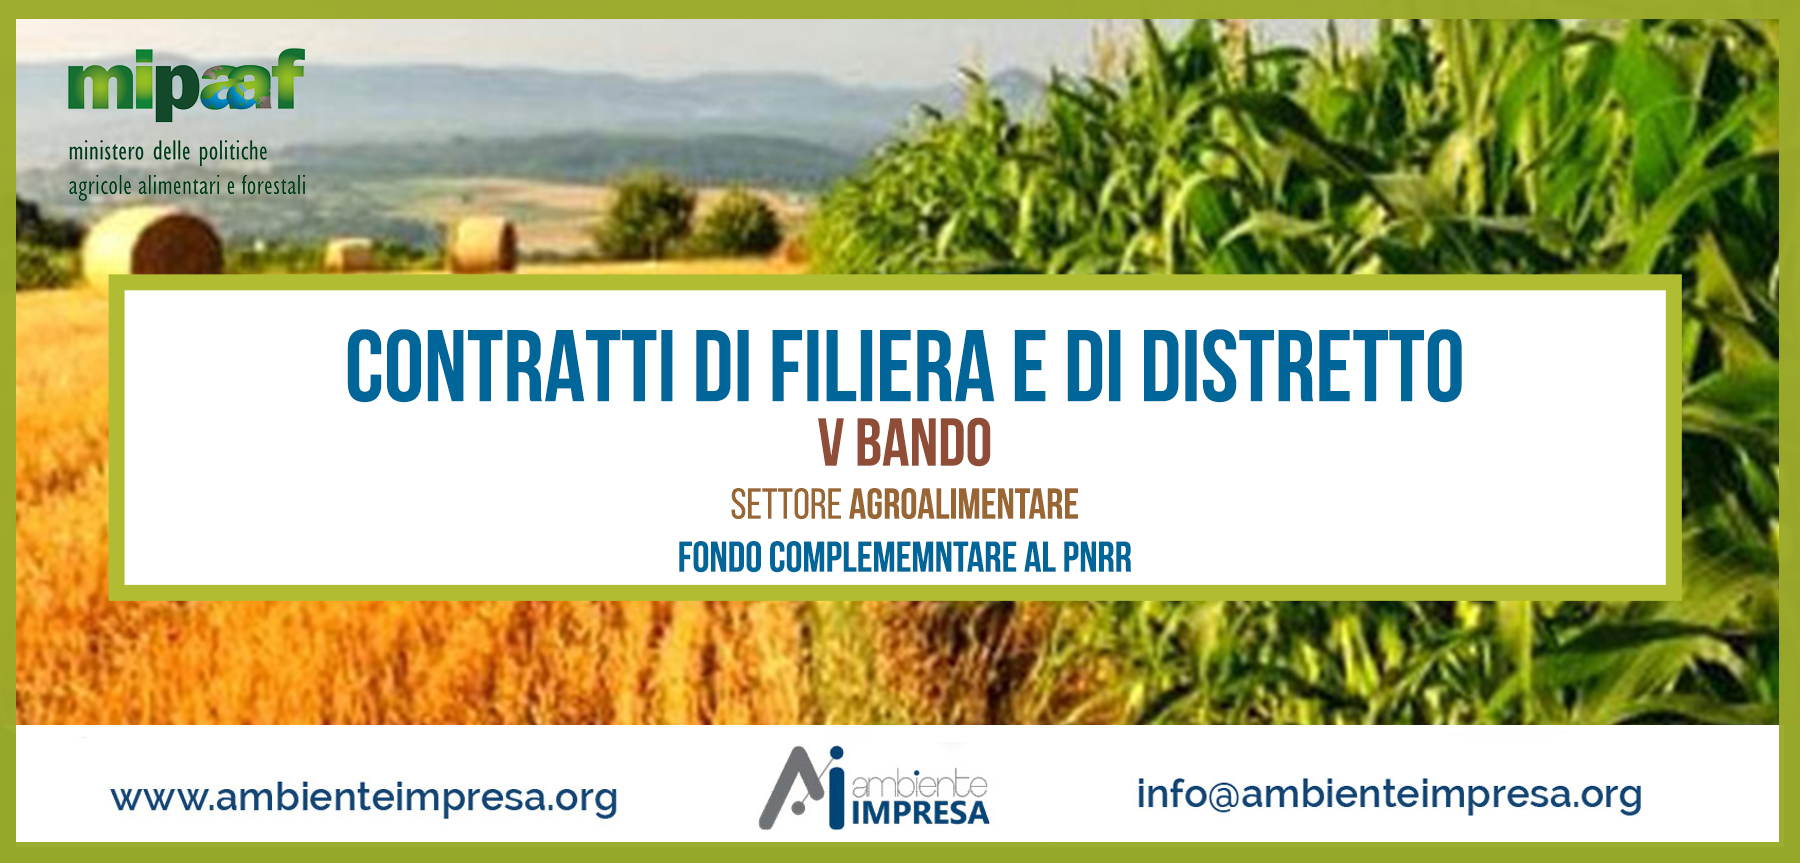 CONTRATTI DI FILIERA E di DISTRETTO - V BANDO - Settore Agroalimentare - PNRR - Ambiente Impresa srl - Cagliari